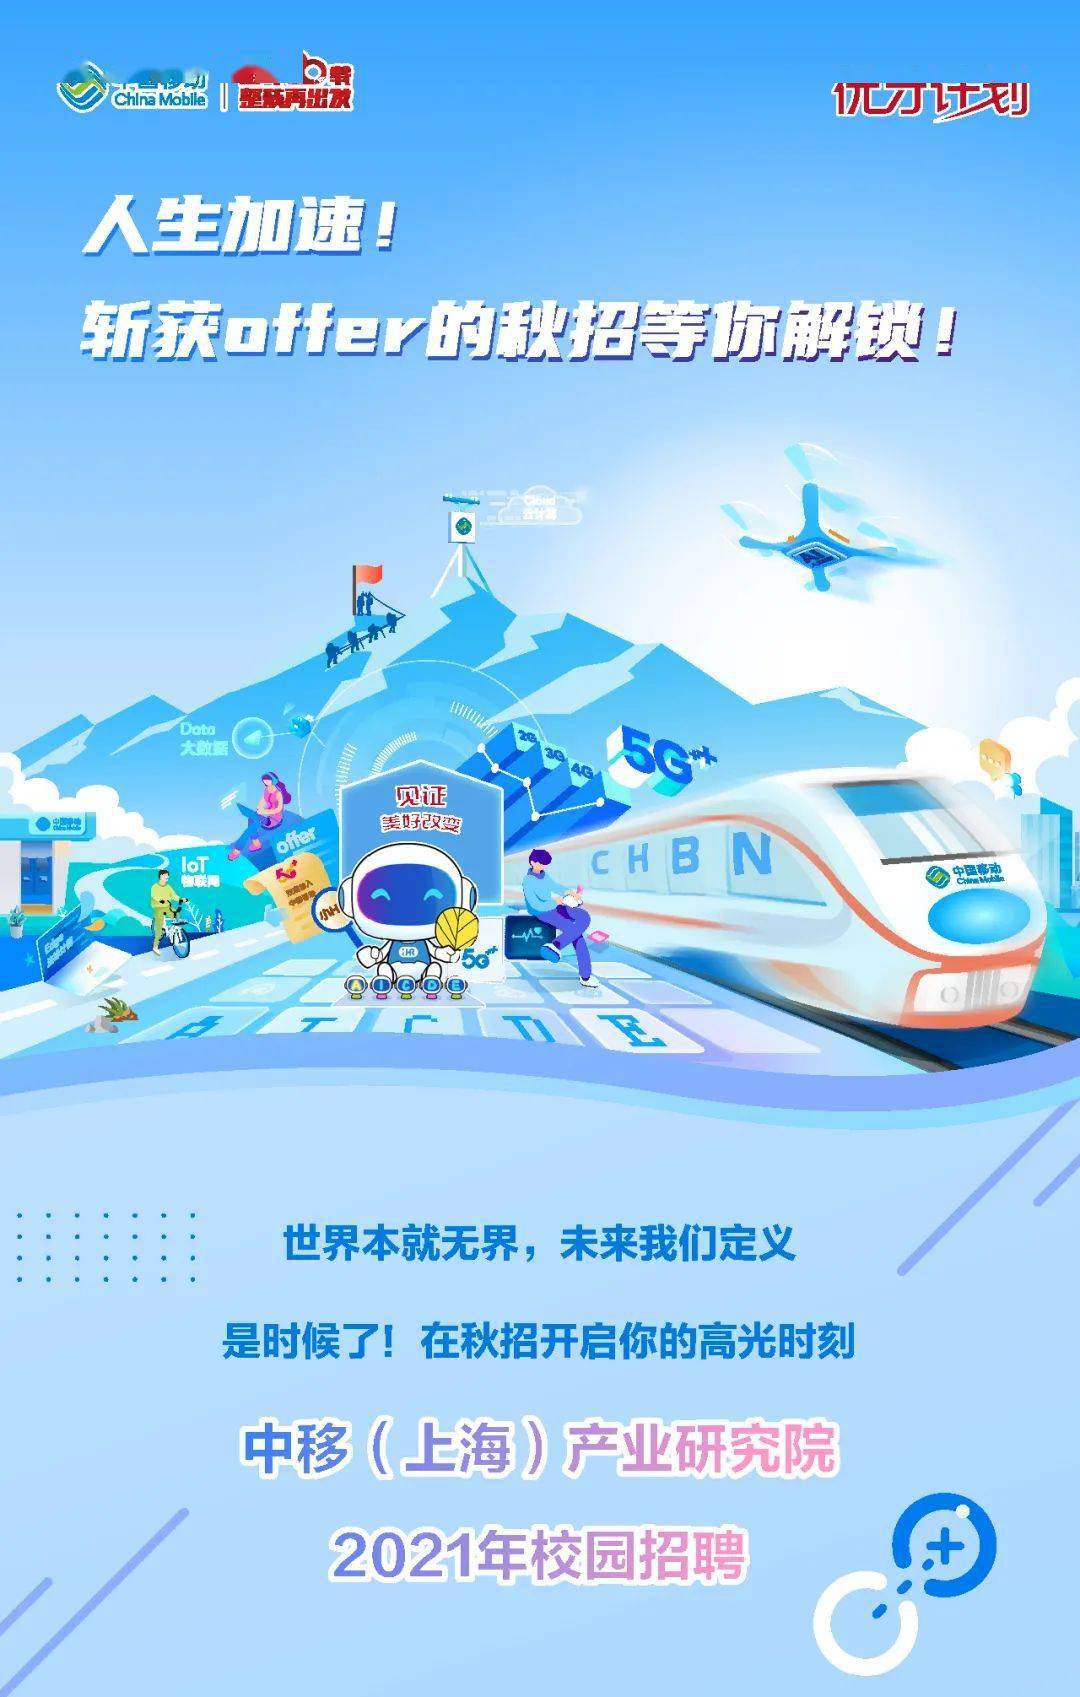 中国移动上海产业研究院2021校园招聘!